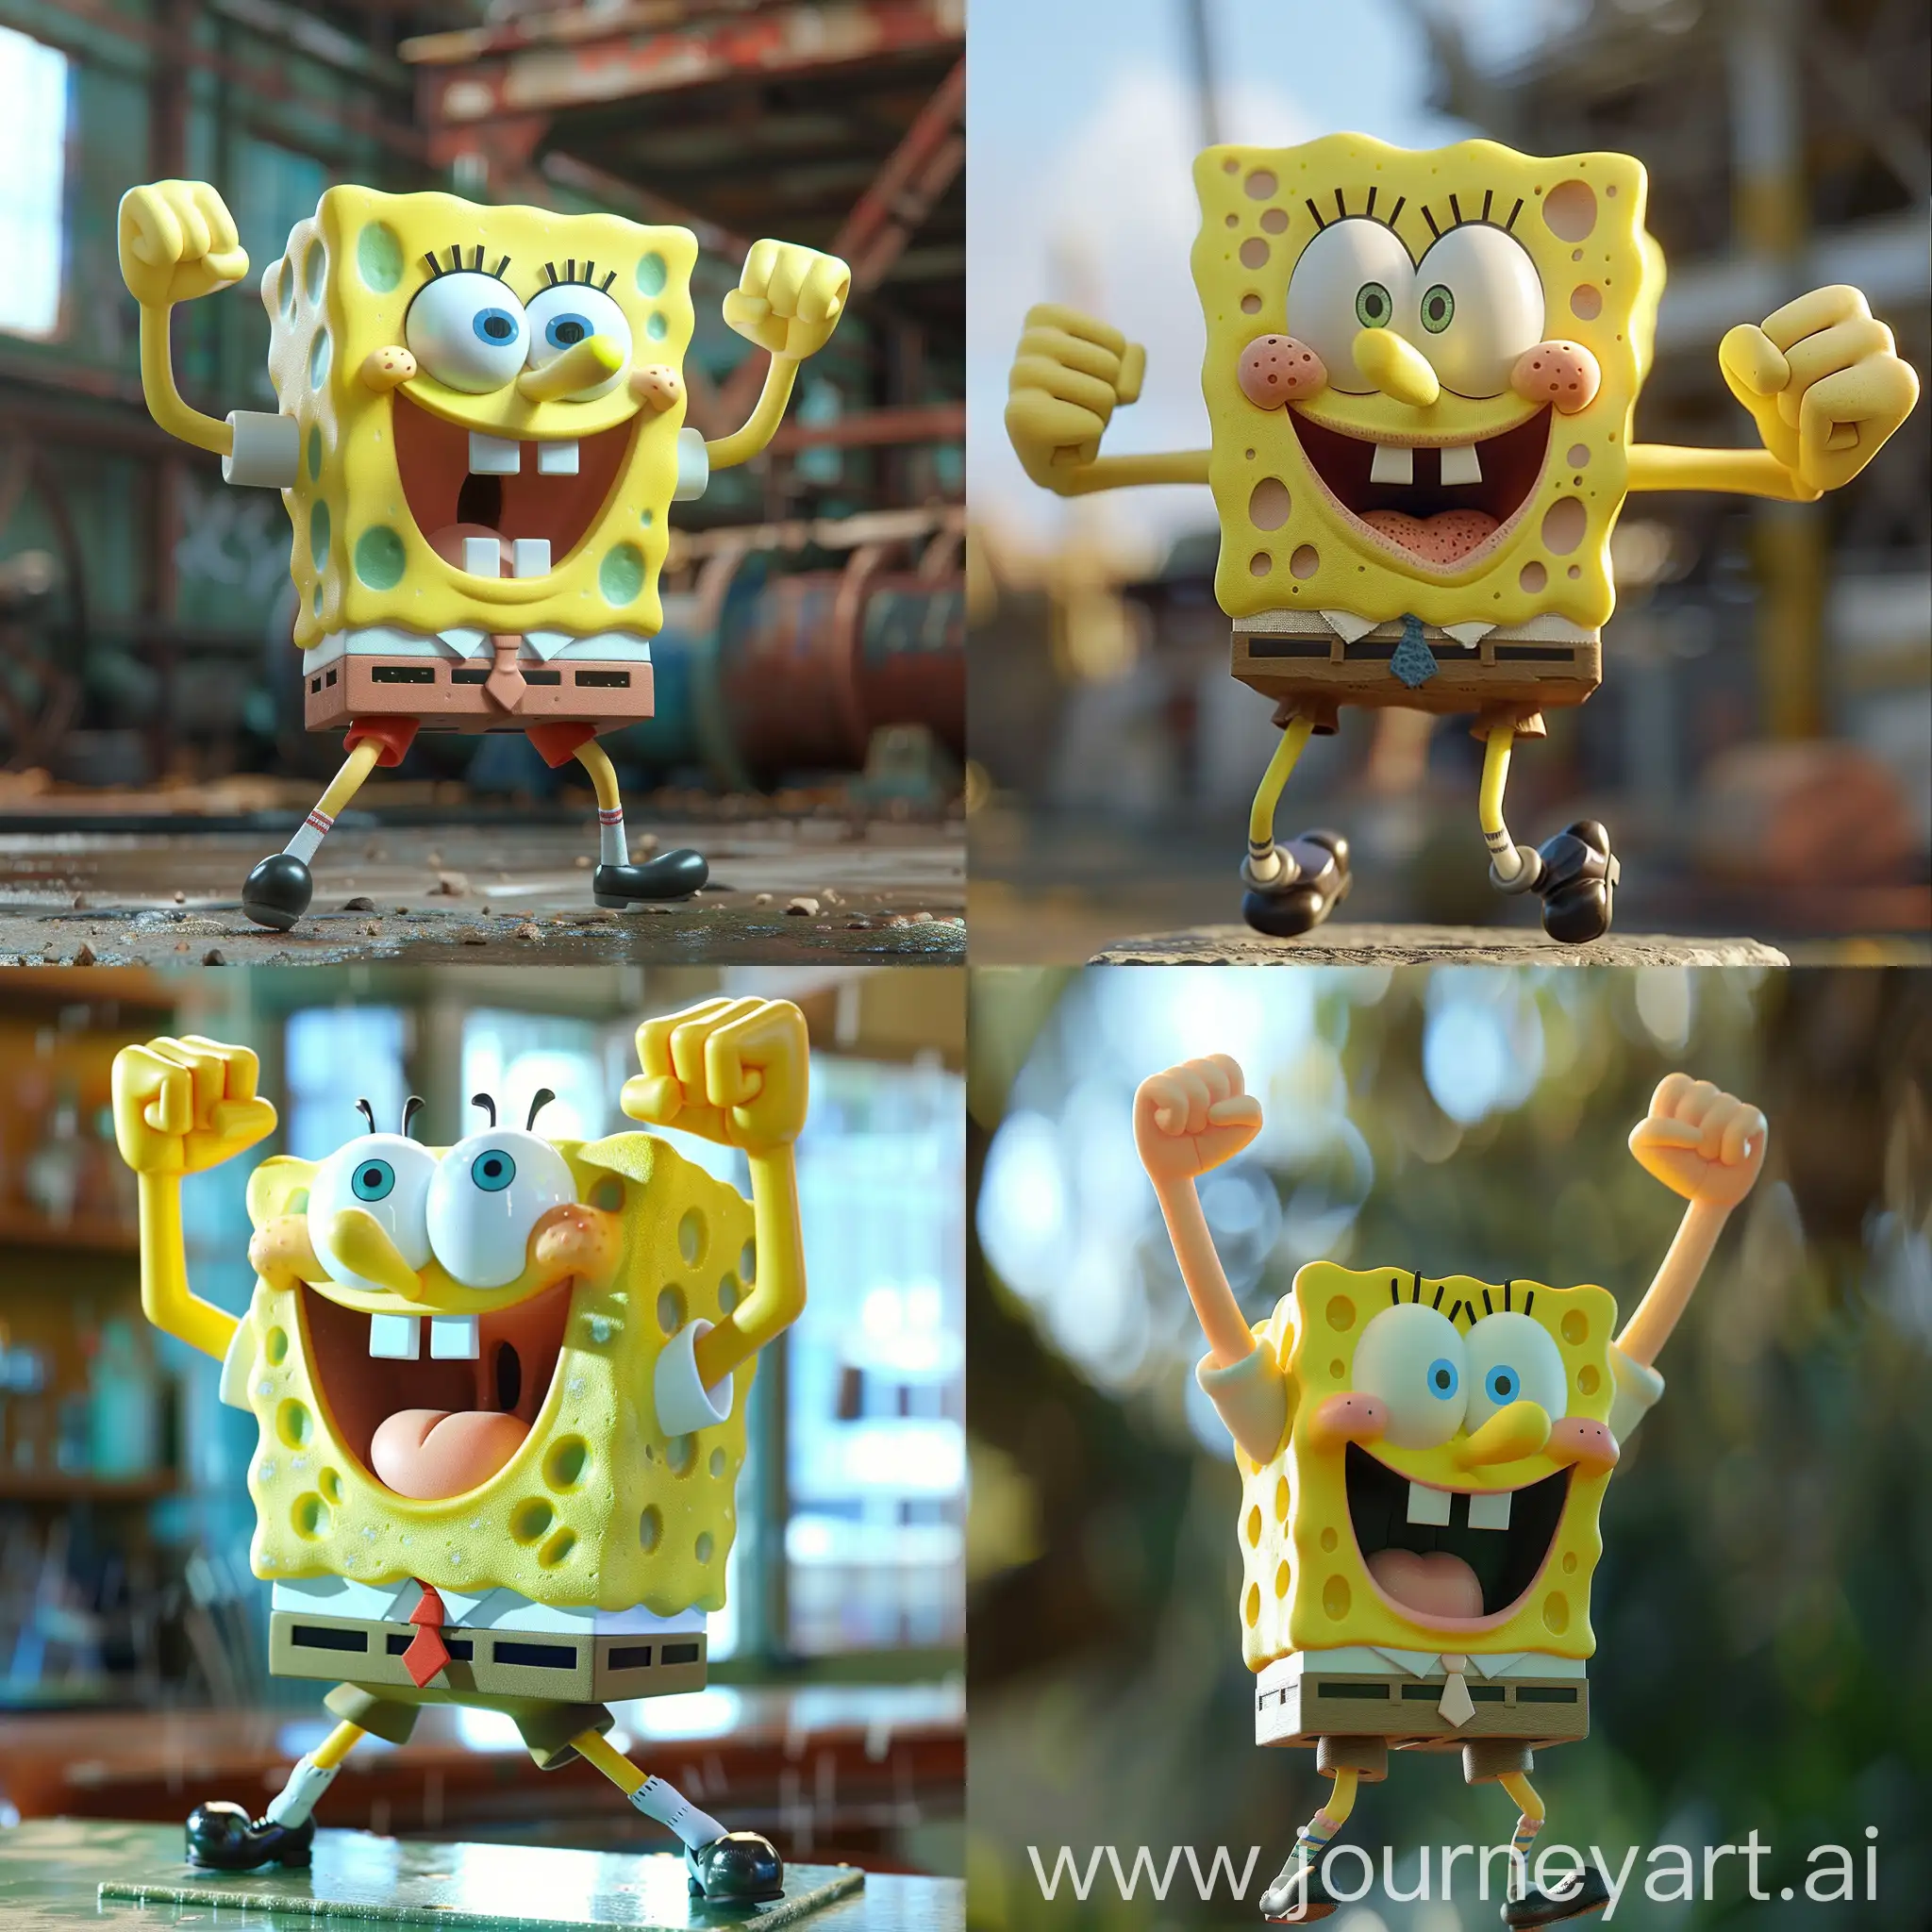 Pumped-up SpongeBob shows his strength